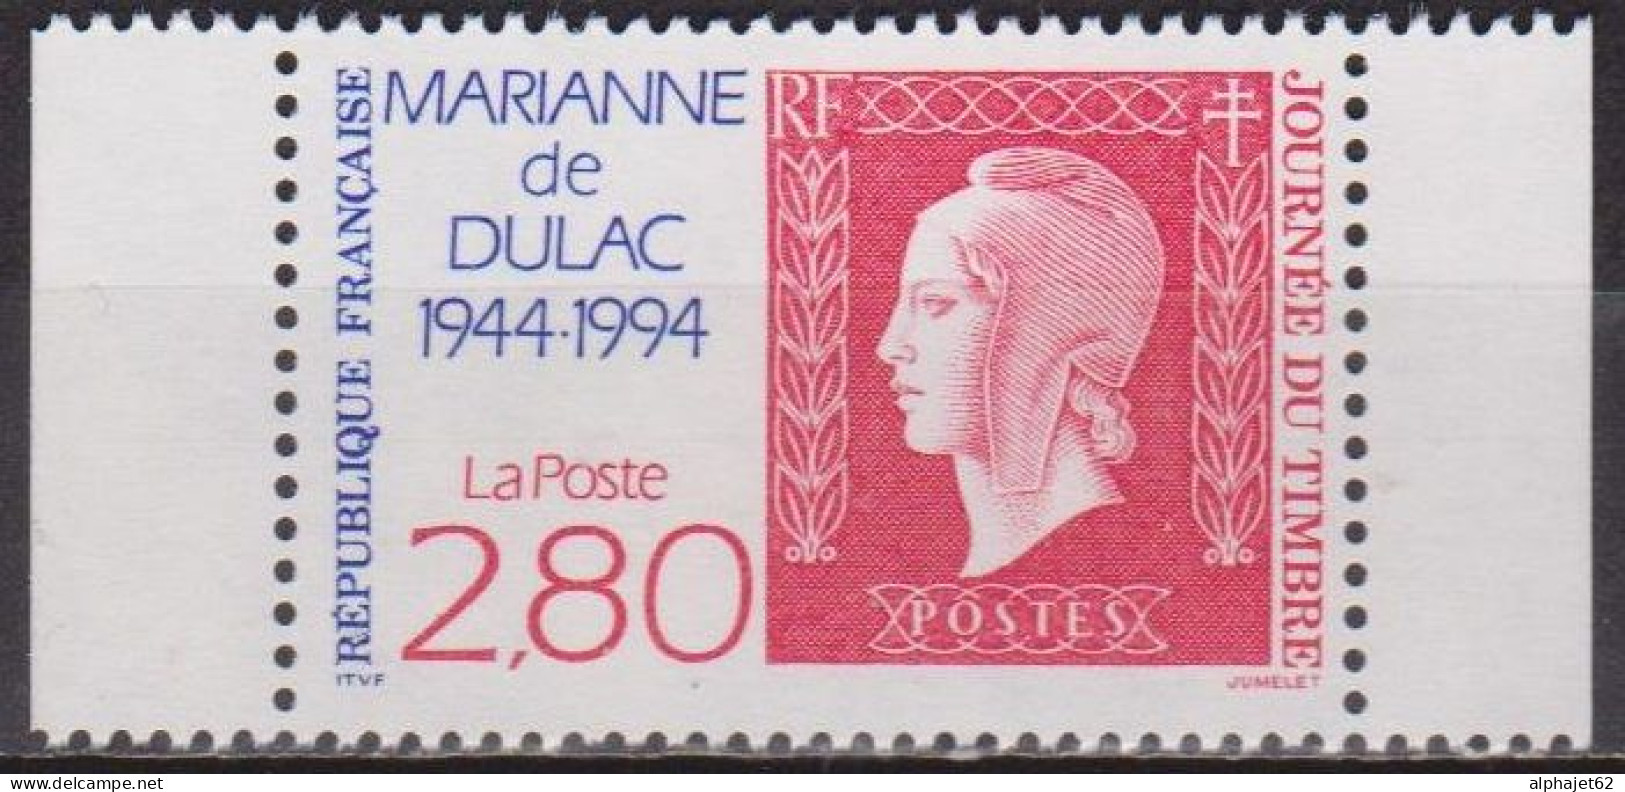 Marianne De Dulac - FRANCE - Cinquantenaire, Timbre De Carnet: N° 2863 A **  - 1994 - Ongebruikt